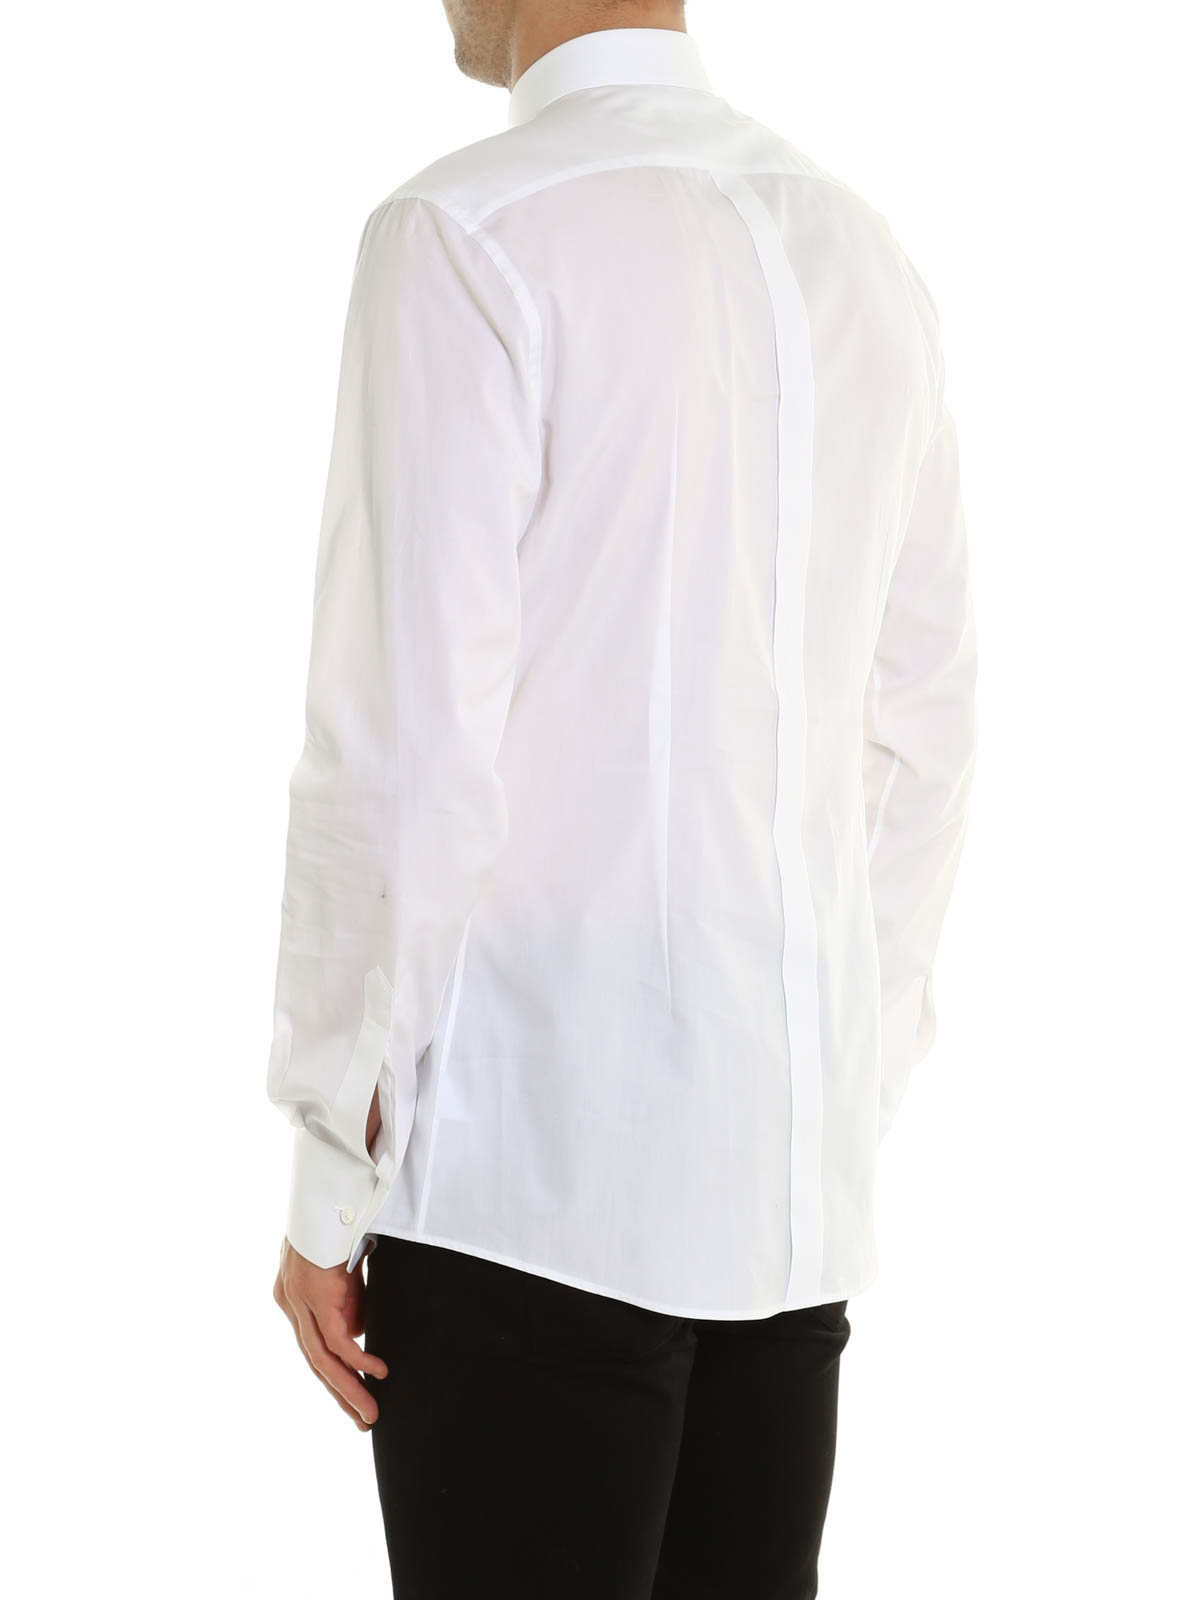 Shirts Dolce & Gabbana - Music inspired cotton shirt 